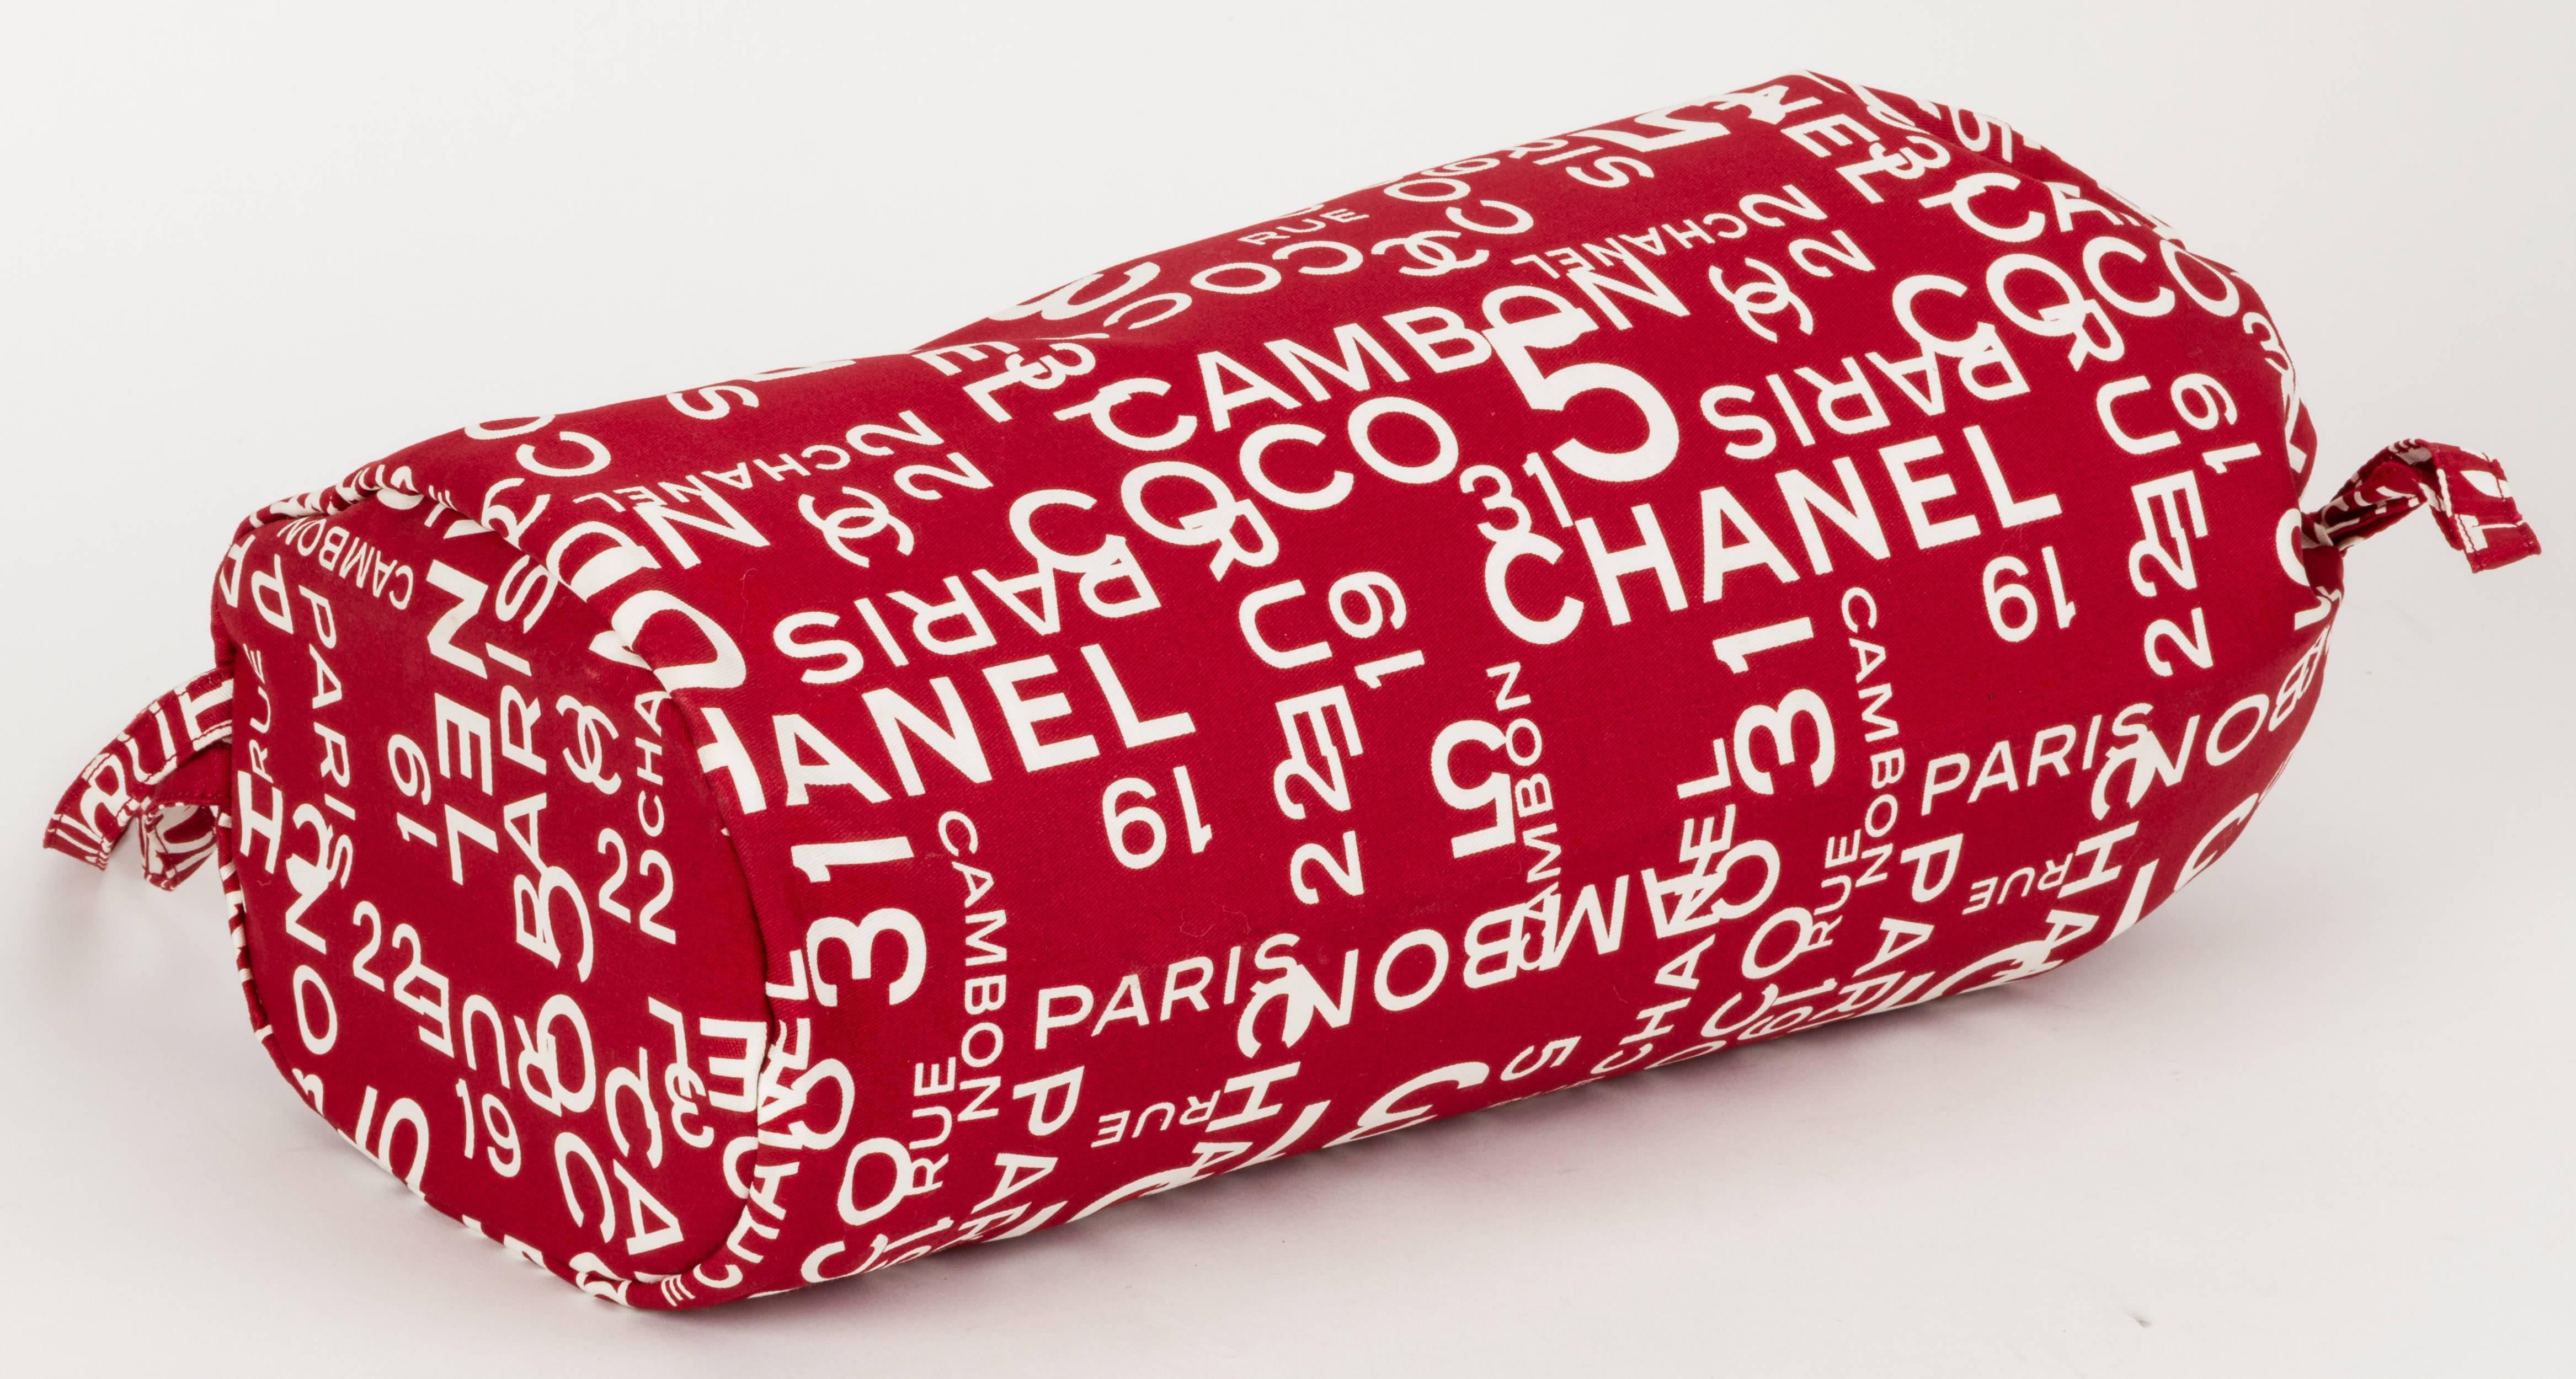 Chanel brand new beach towel set including shoulder bag and towel. Combinaison de rouge et de blanc. La serviette en tissu éponge doux mesure 50